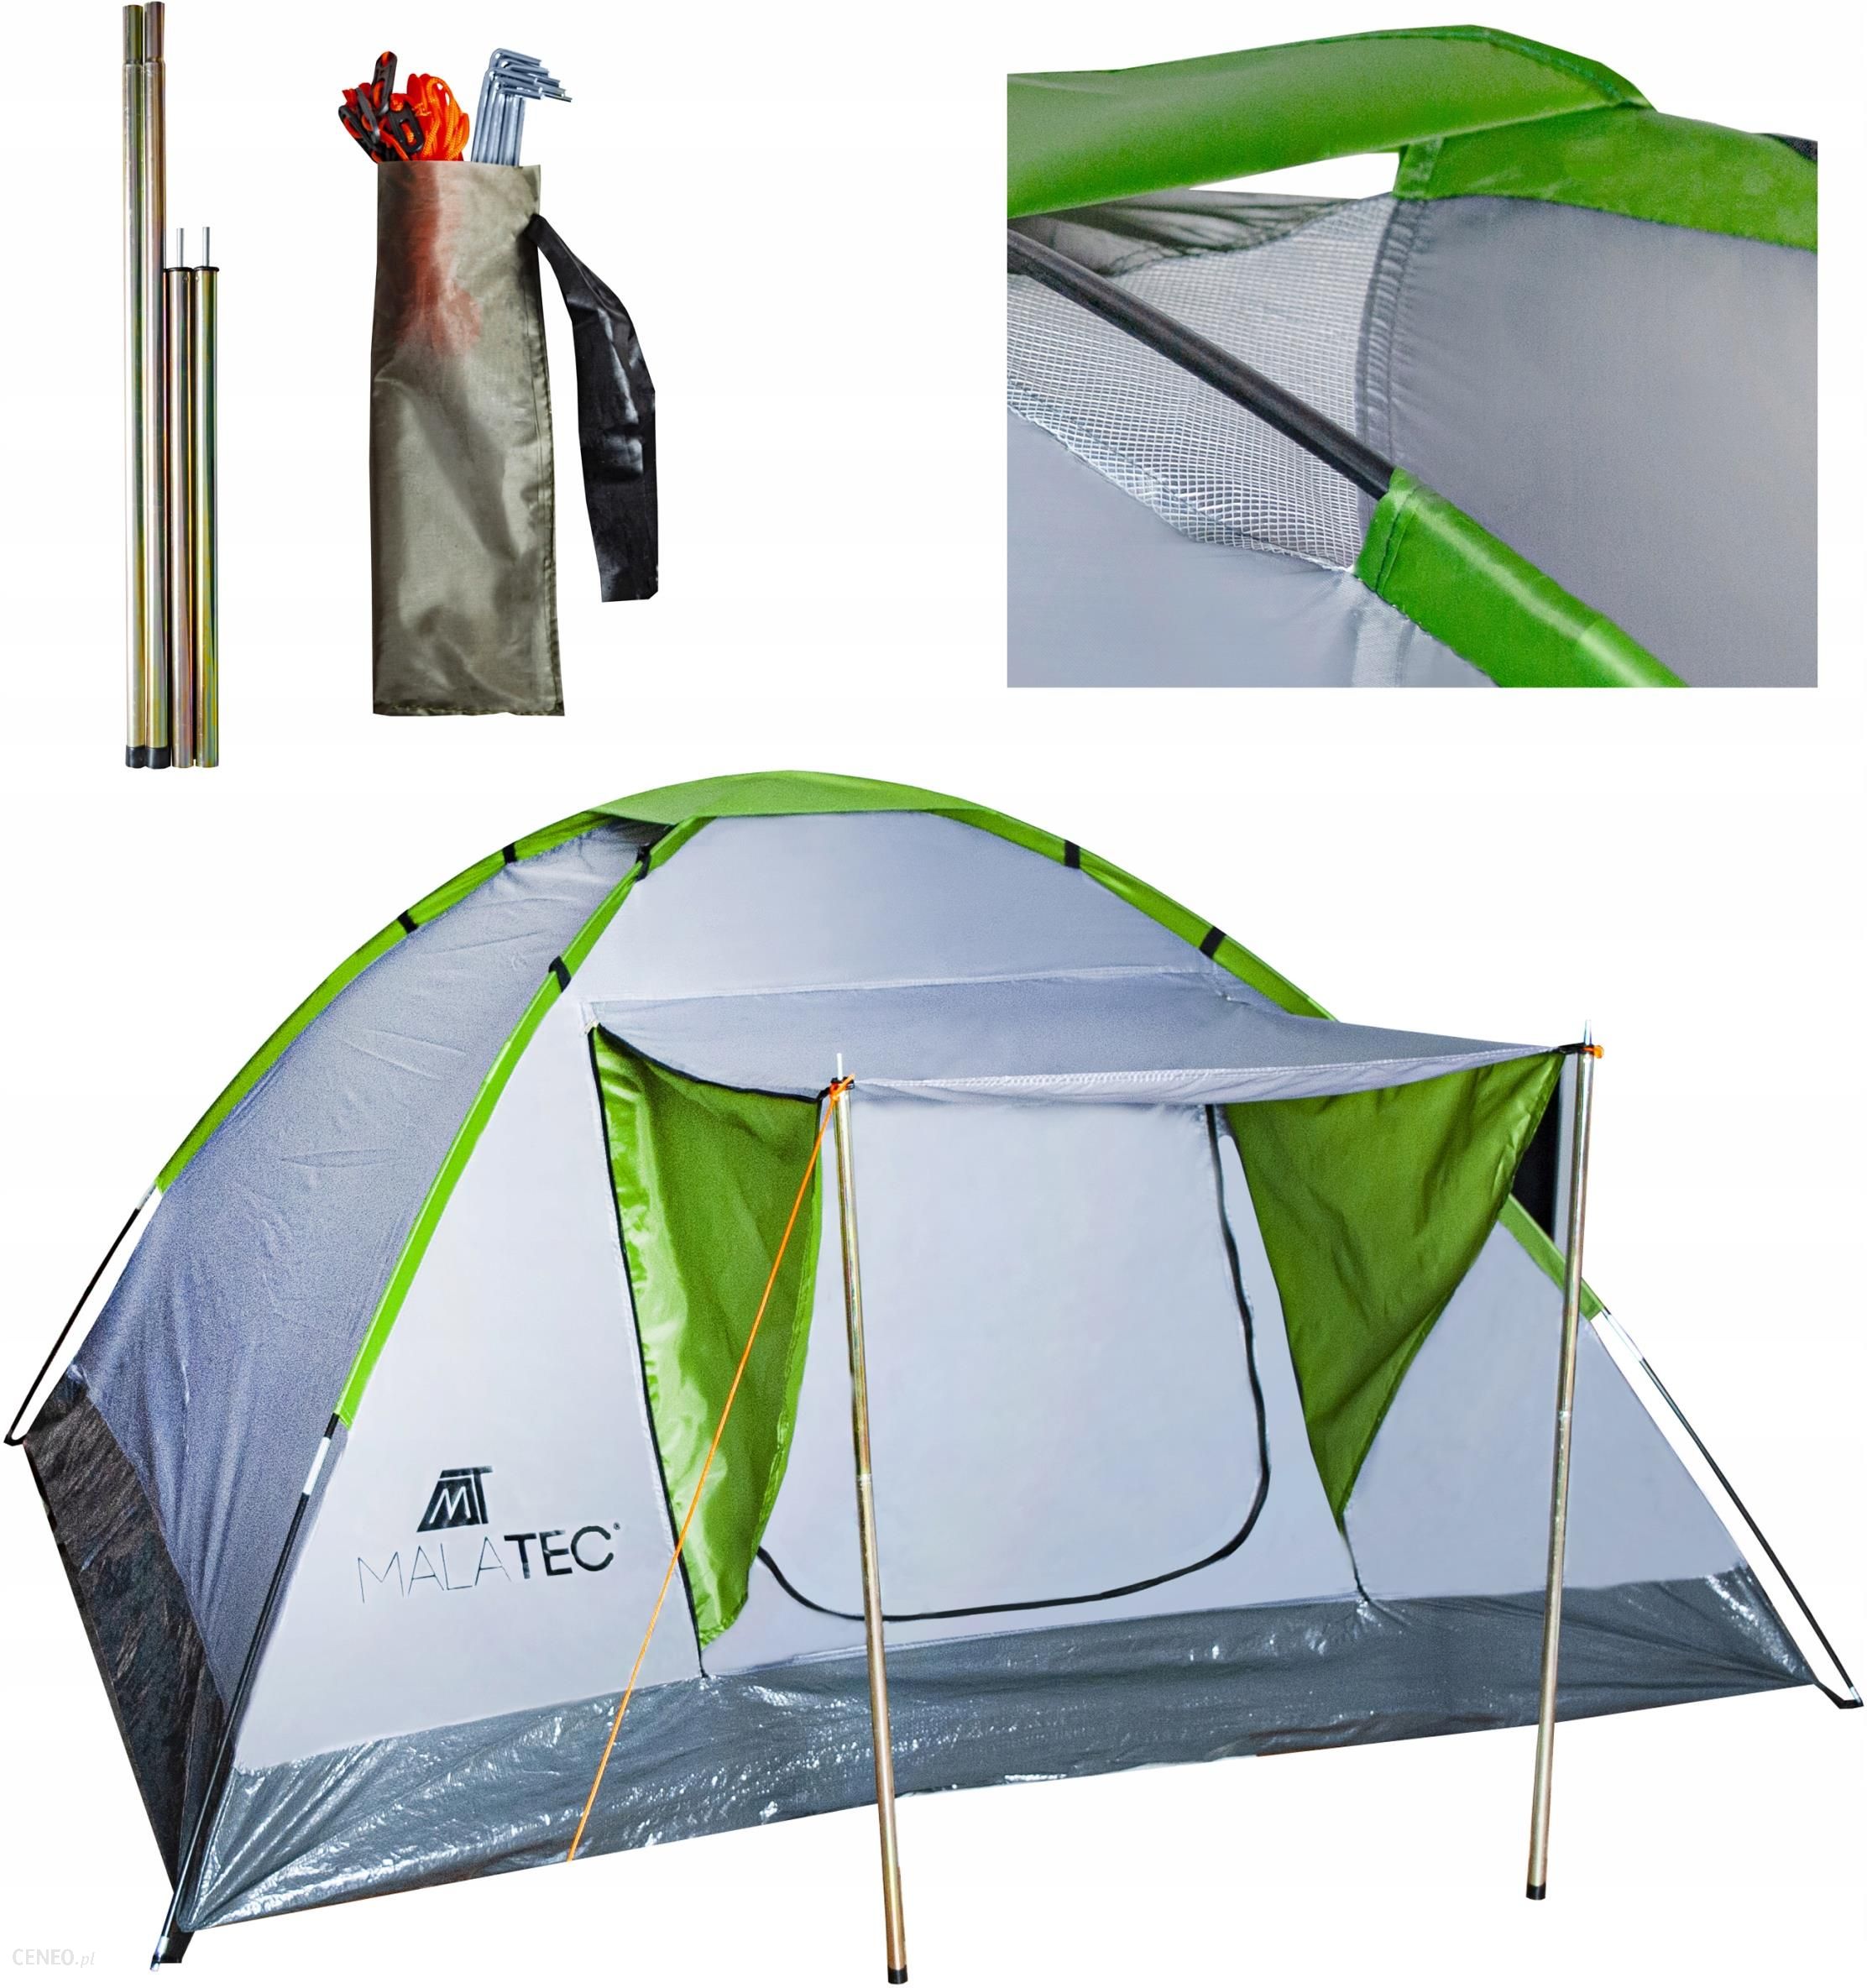 Рейтинг палаток туристических на 3 человека. Палатка 4 местная Монтана тент. Палатка Royokamp Splash Tourist Tent. Палатка 4-местная Camping Keeper автоматическая. Палатки терка тенс 4 местная с козырьком.